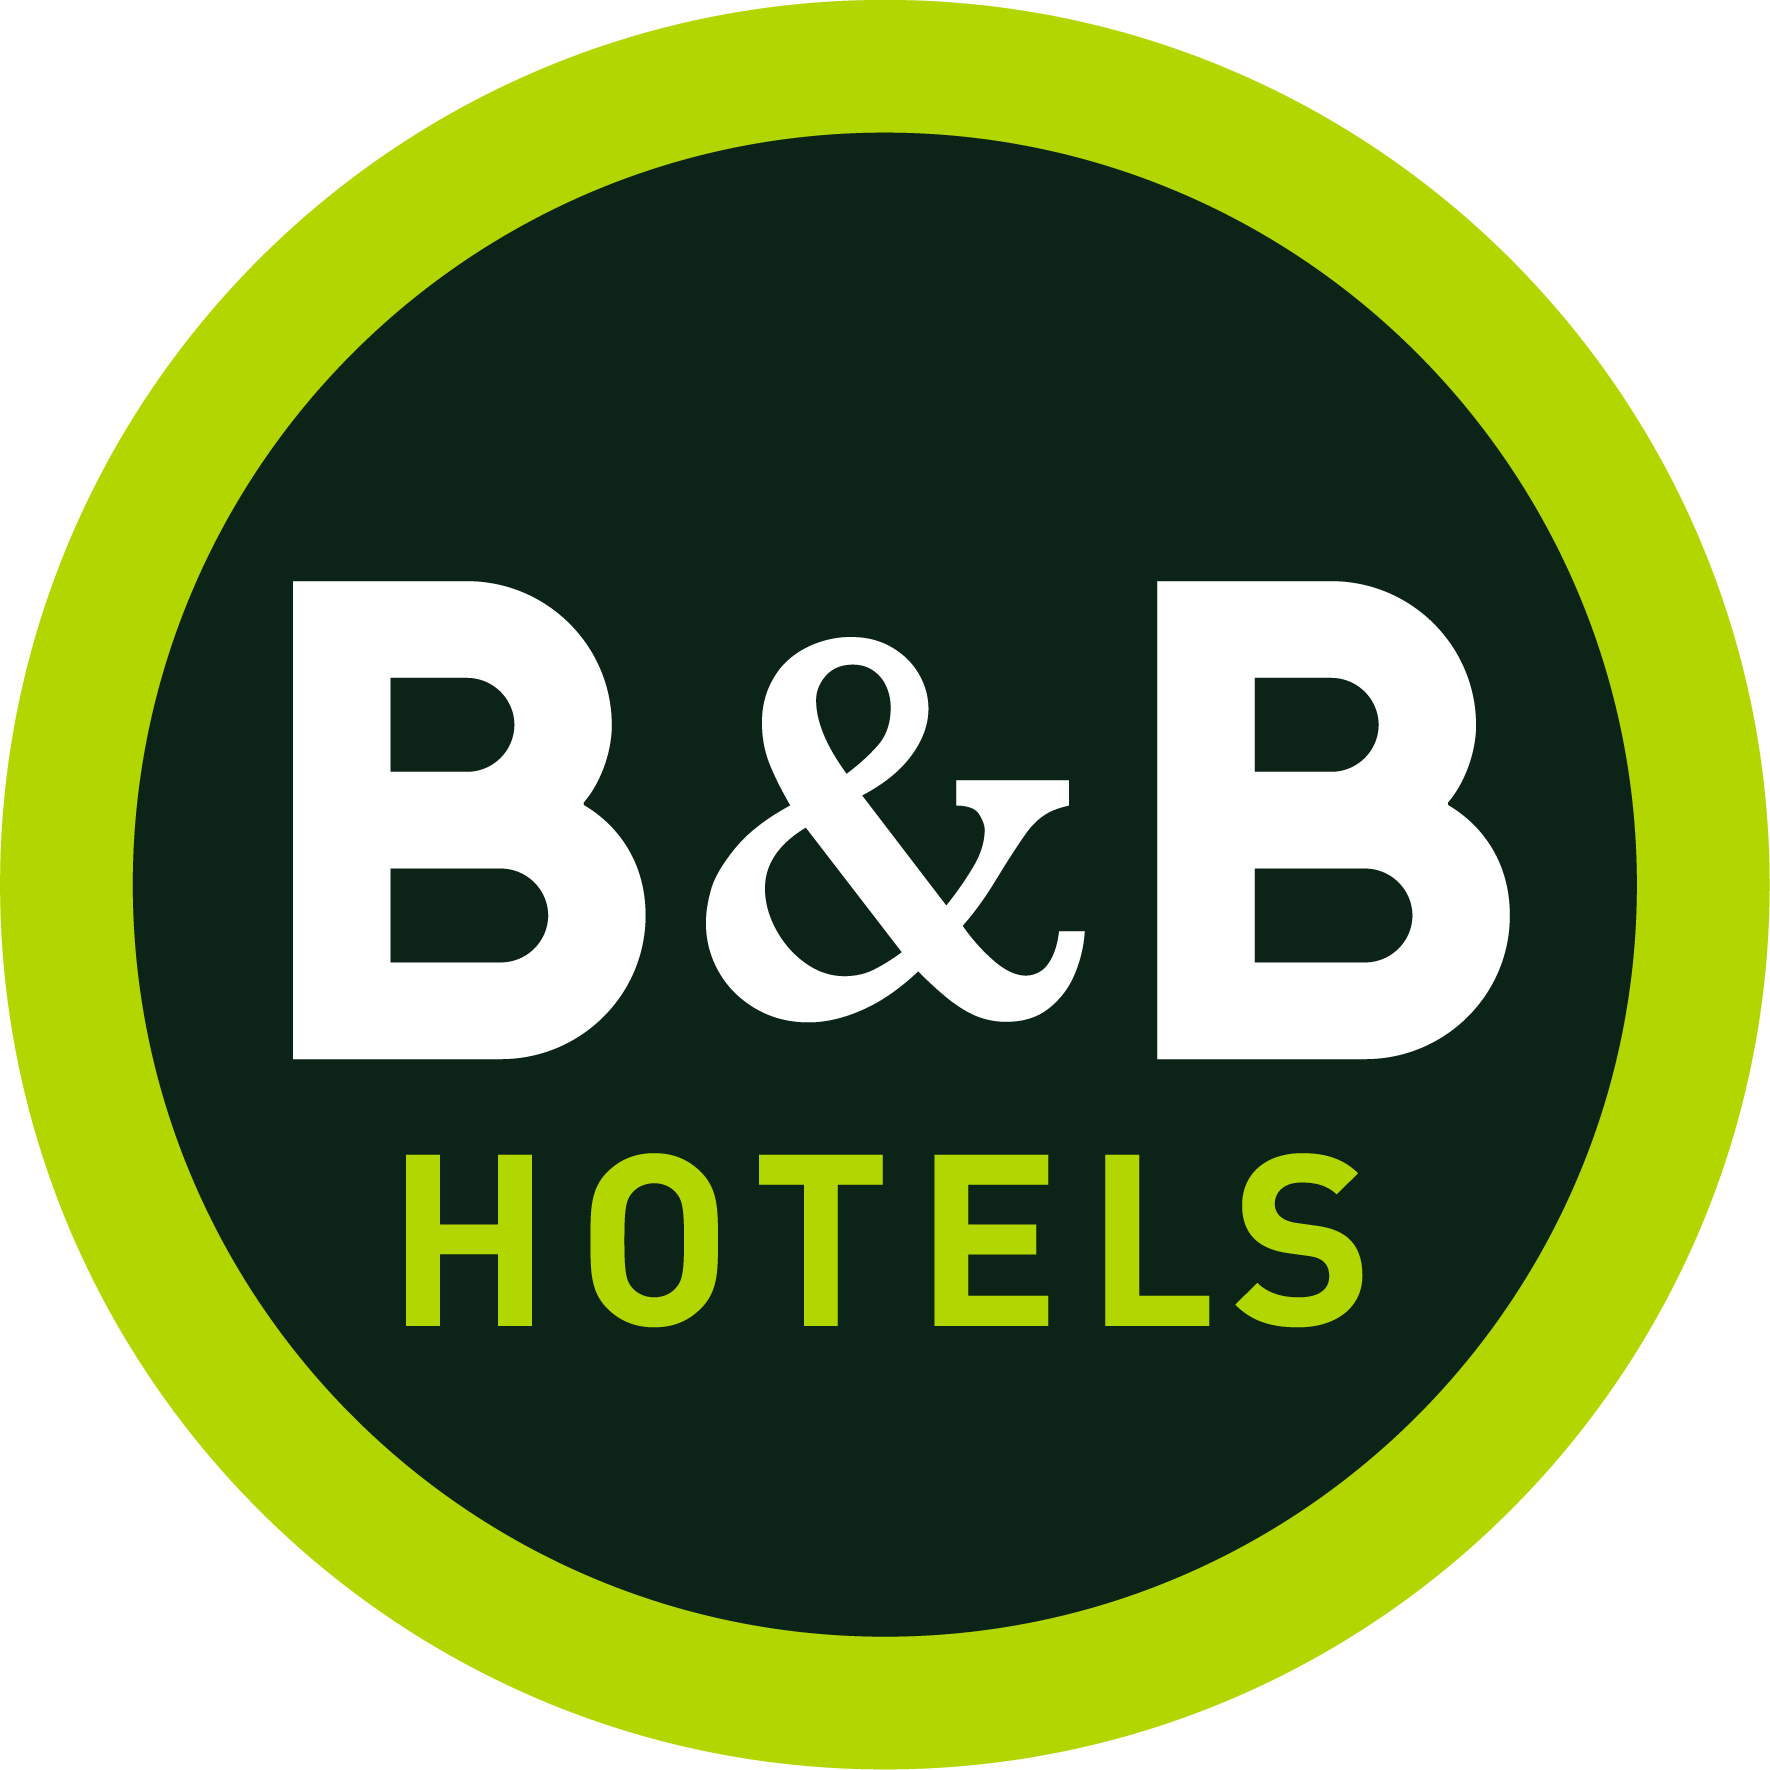 B&B HOTEL Toulouse Cité de l'Espace Hurel - Hotel - Toulouse - 0 892 23 37 83 France | ShowMeLocal.com